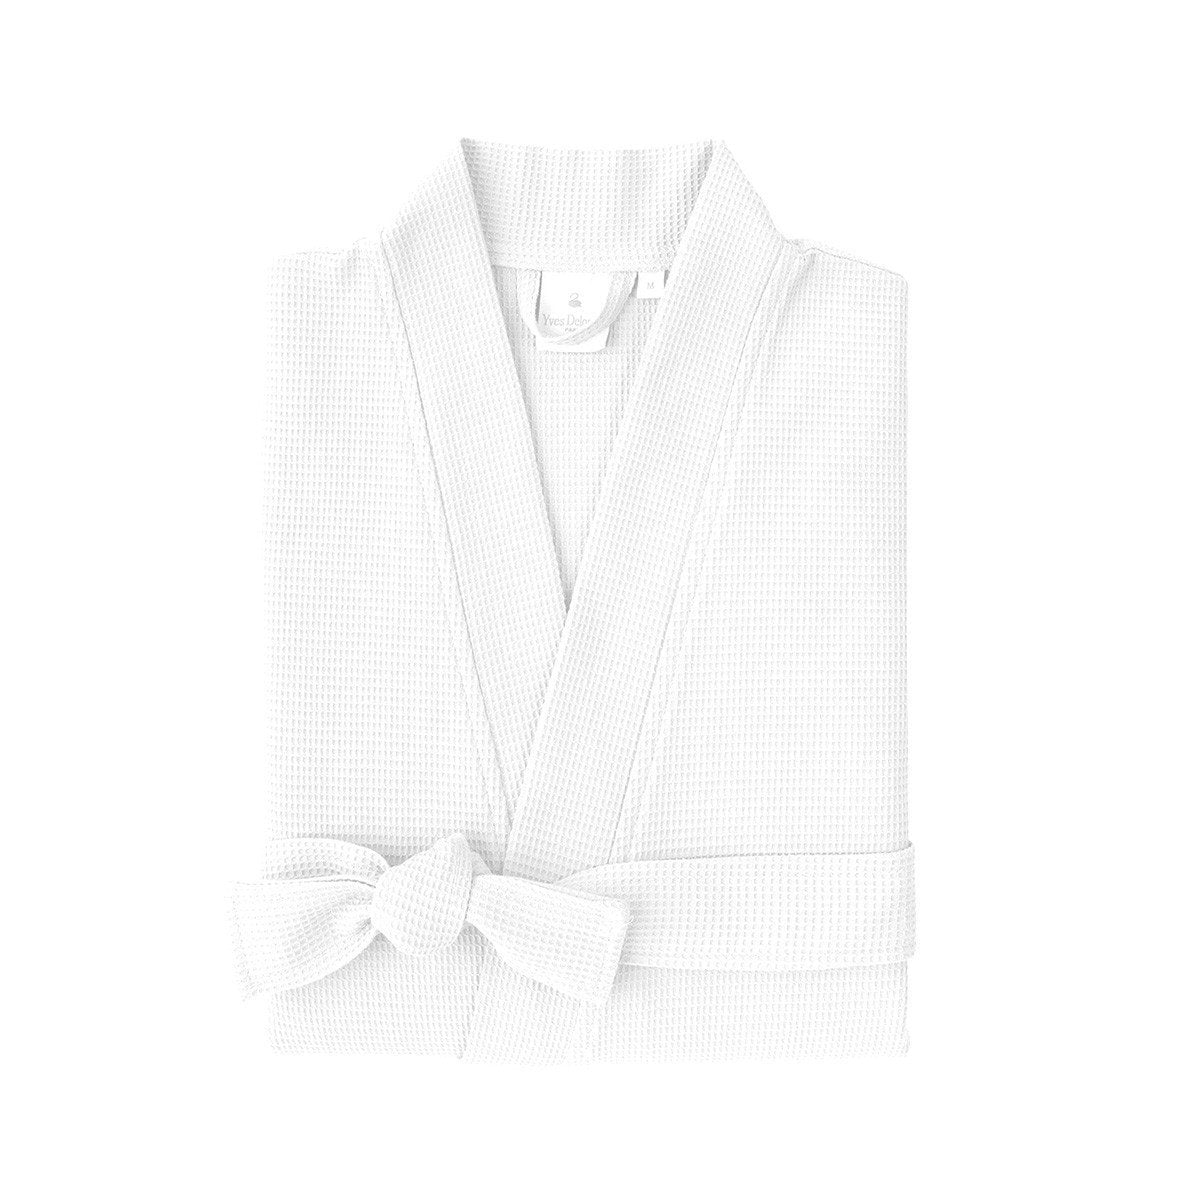 Astreena Blanc Kimono Bathrobe by Yves Delorme | Fig Linens - White unisex kimono robe